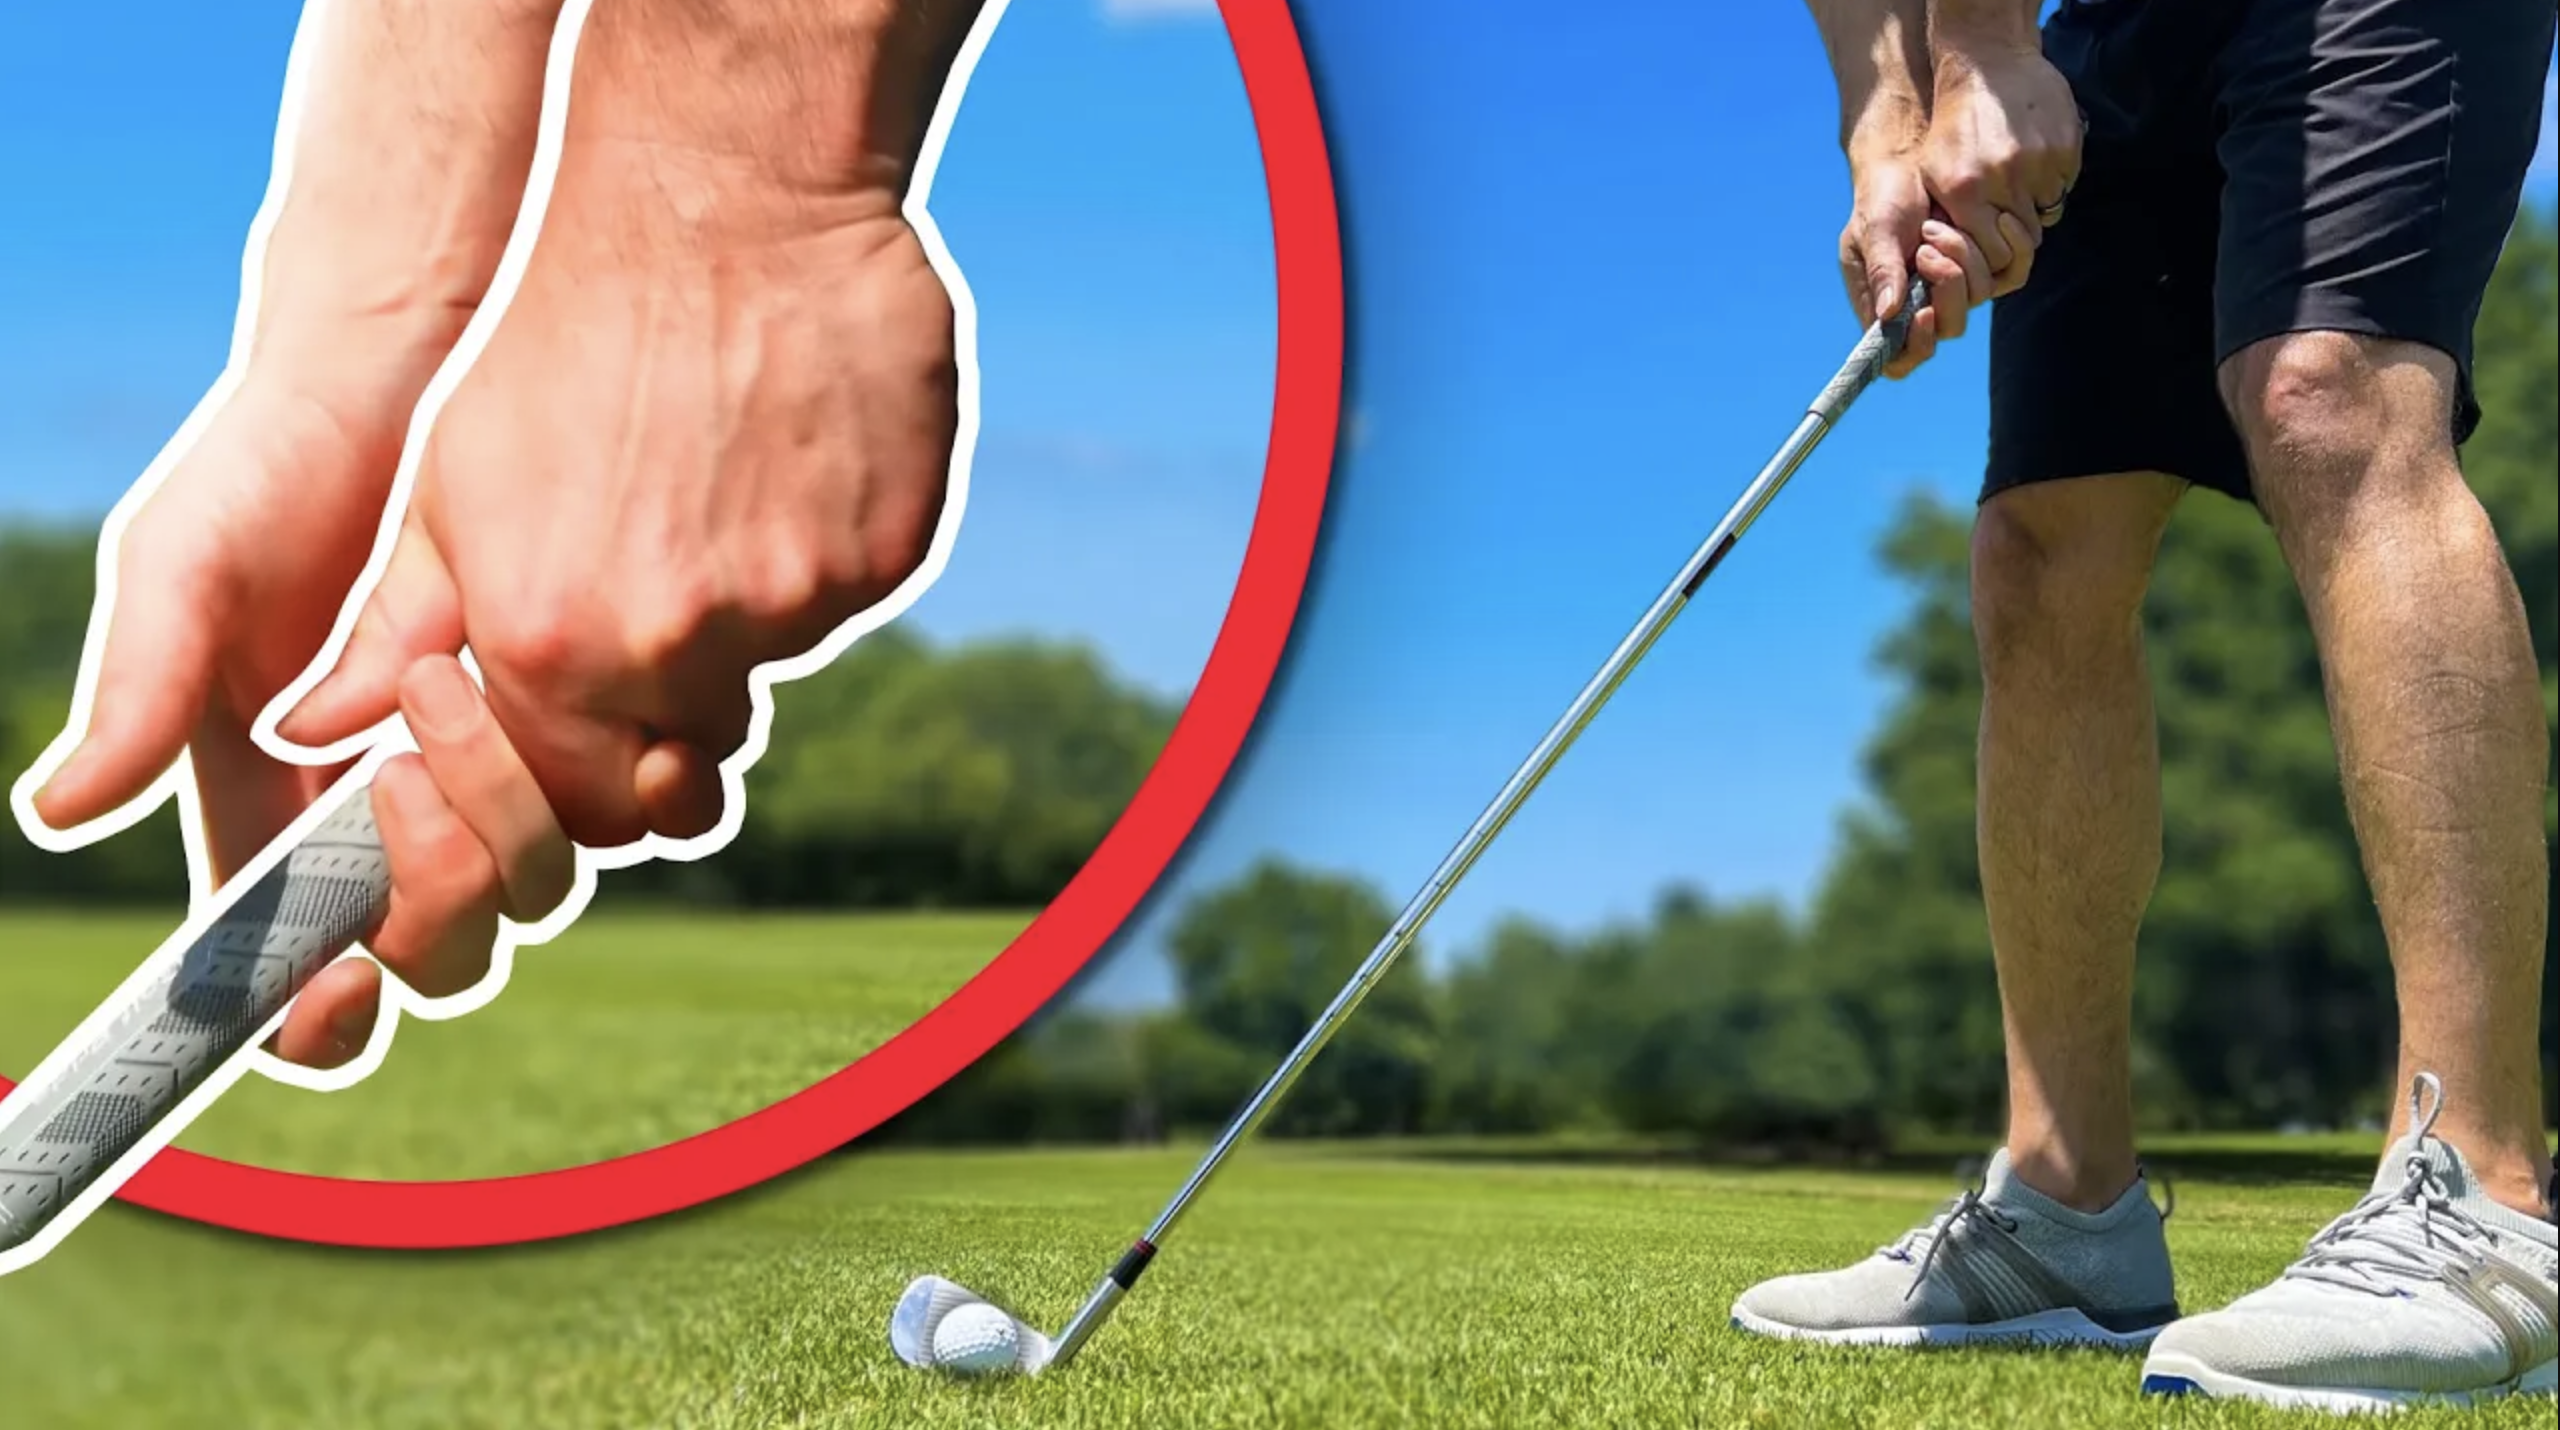 golf swing wrist hinge simple tip